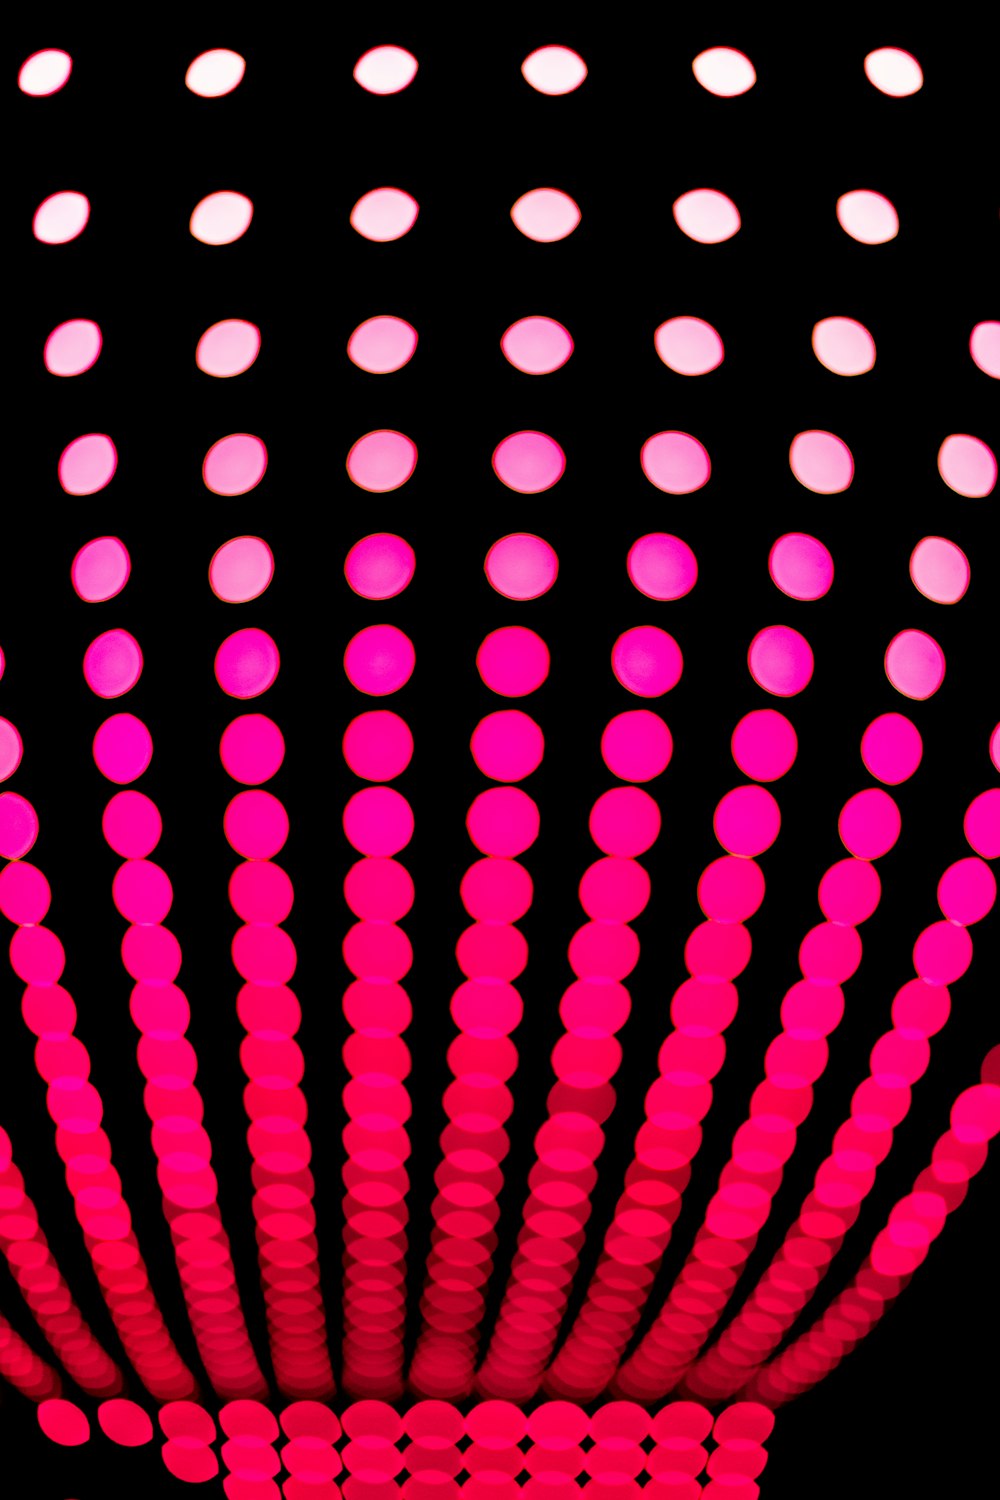 uno sfondo nero con cerchi rosa e bianchi